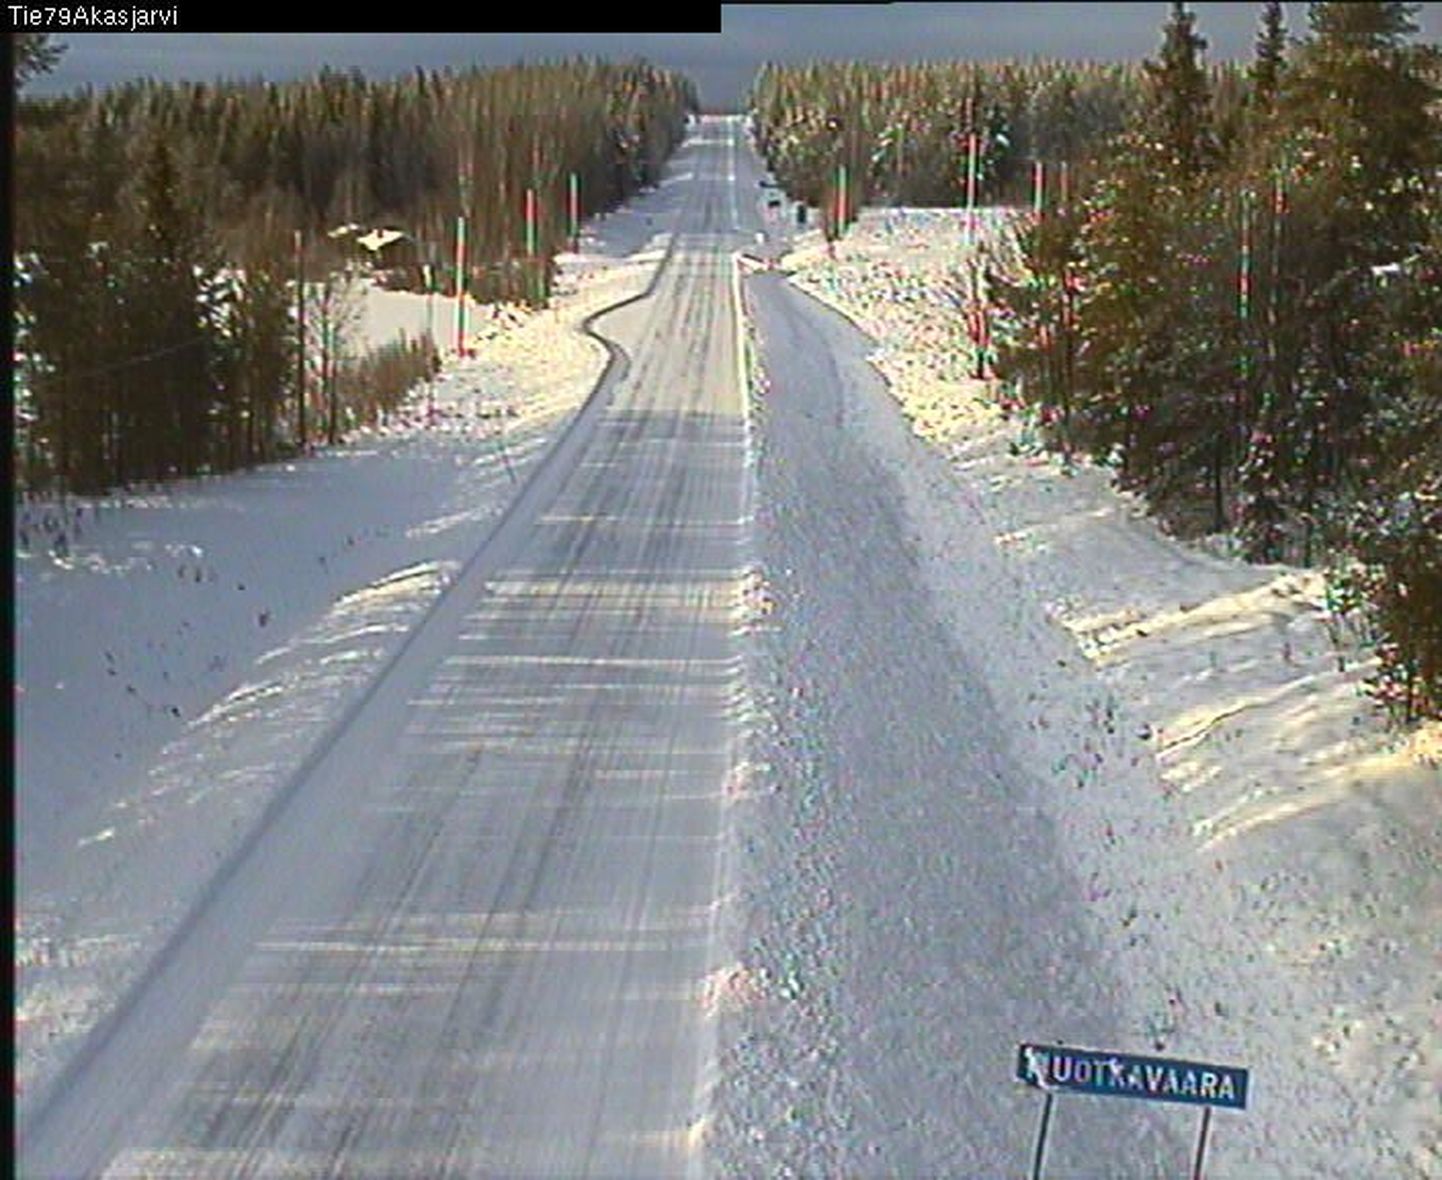 Talvine loodus Lapi maakonna loodeosas Äkäsjärvil. Maanteekaamera jäädvustas selle täna kell 12.02.